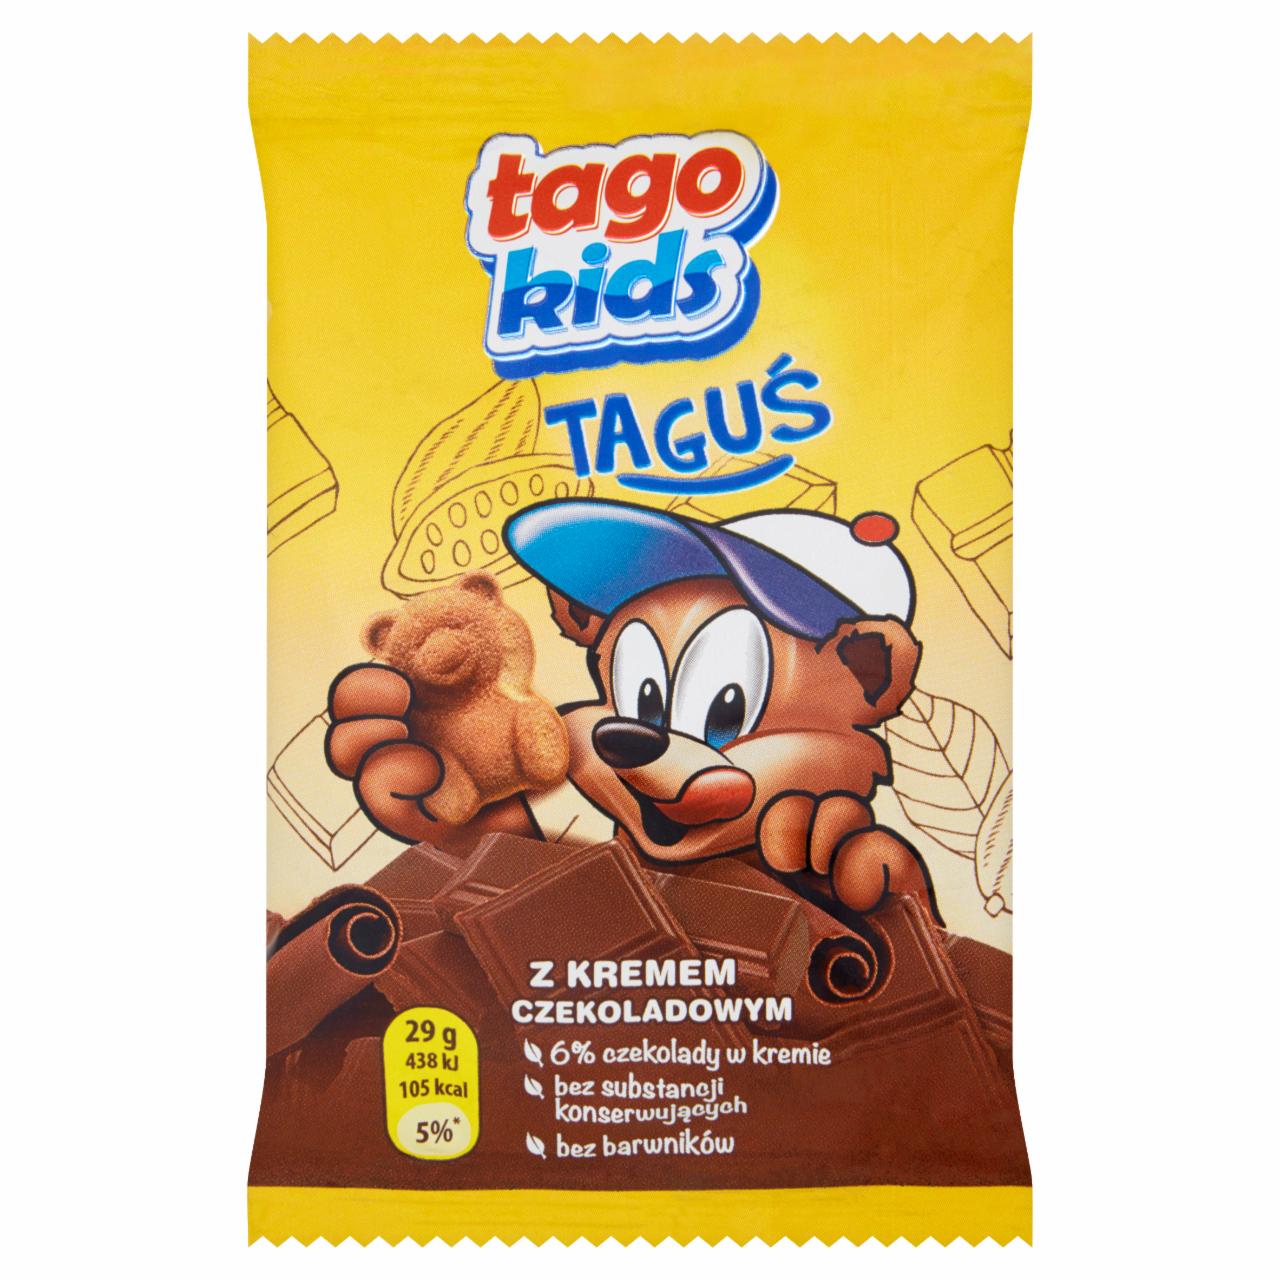 Zdjęcia - Tago Kids Taguś Ciastko biszkoptowe z kremem czekoladowym 29 g